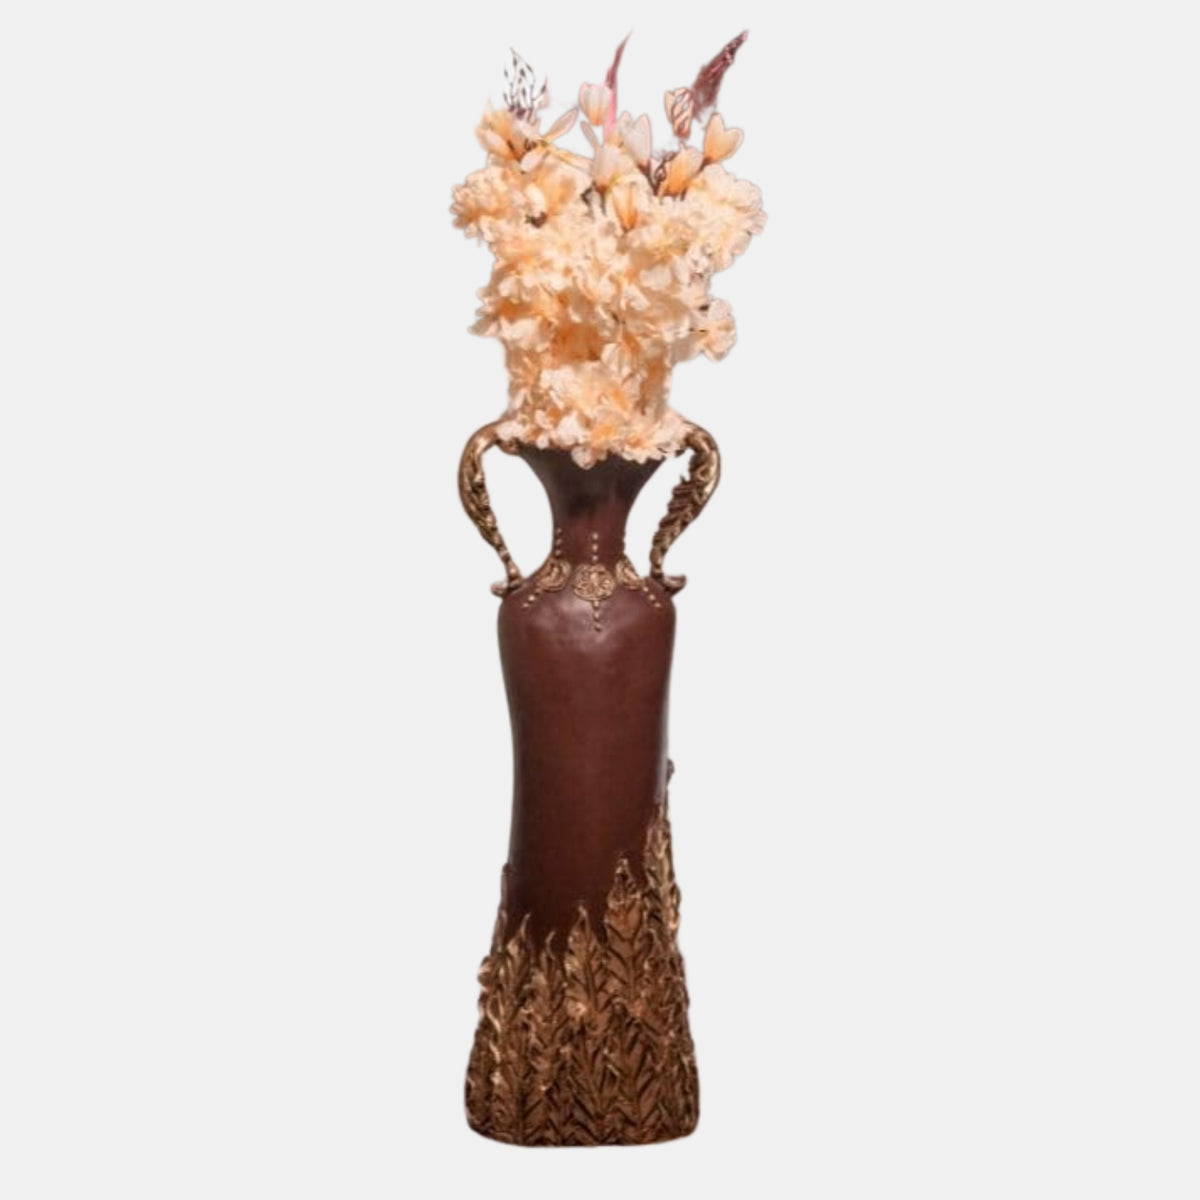 ICONIC LEAF SHAPE HANDLE VASE | Aesthetic Vase For Home | Vase for Office | Vase for Home | Leaf Shape Handle Vase